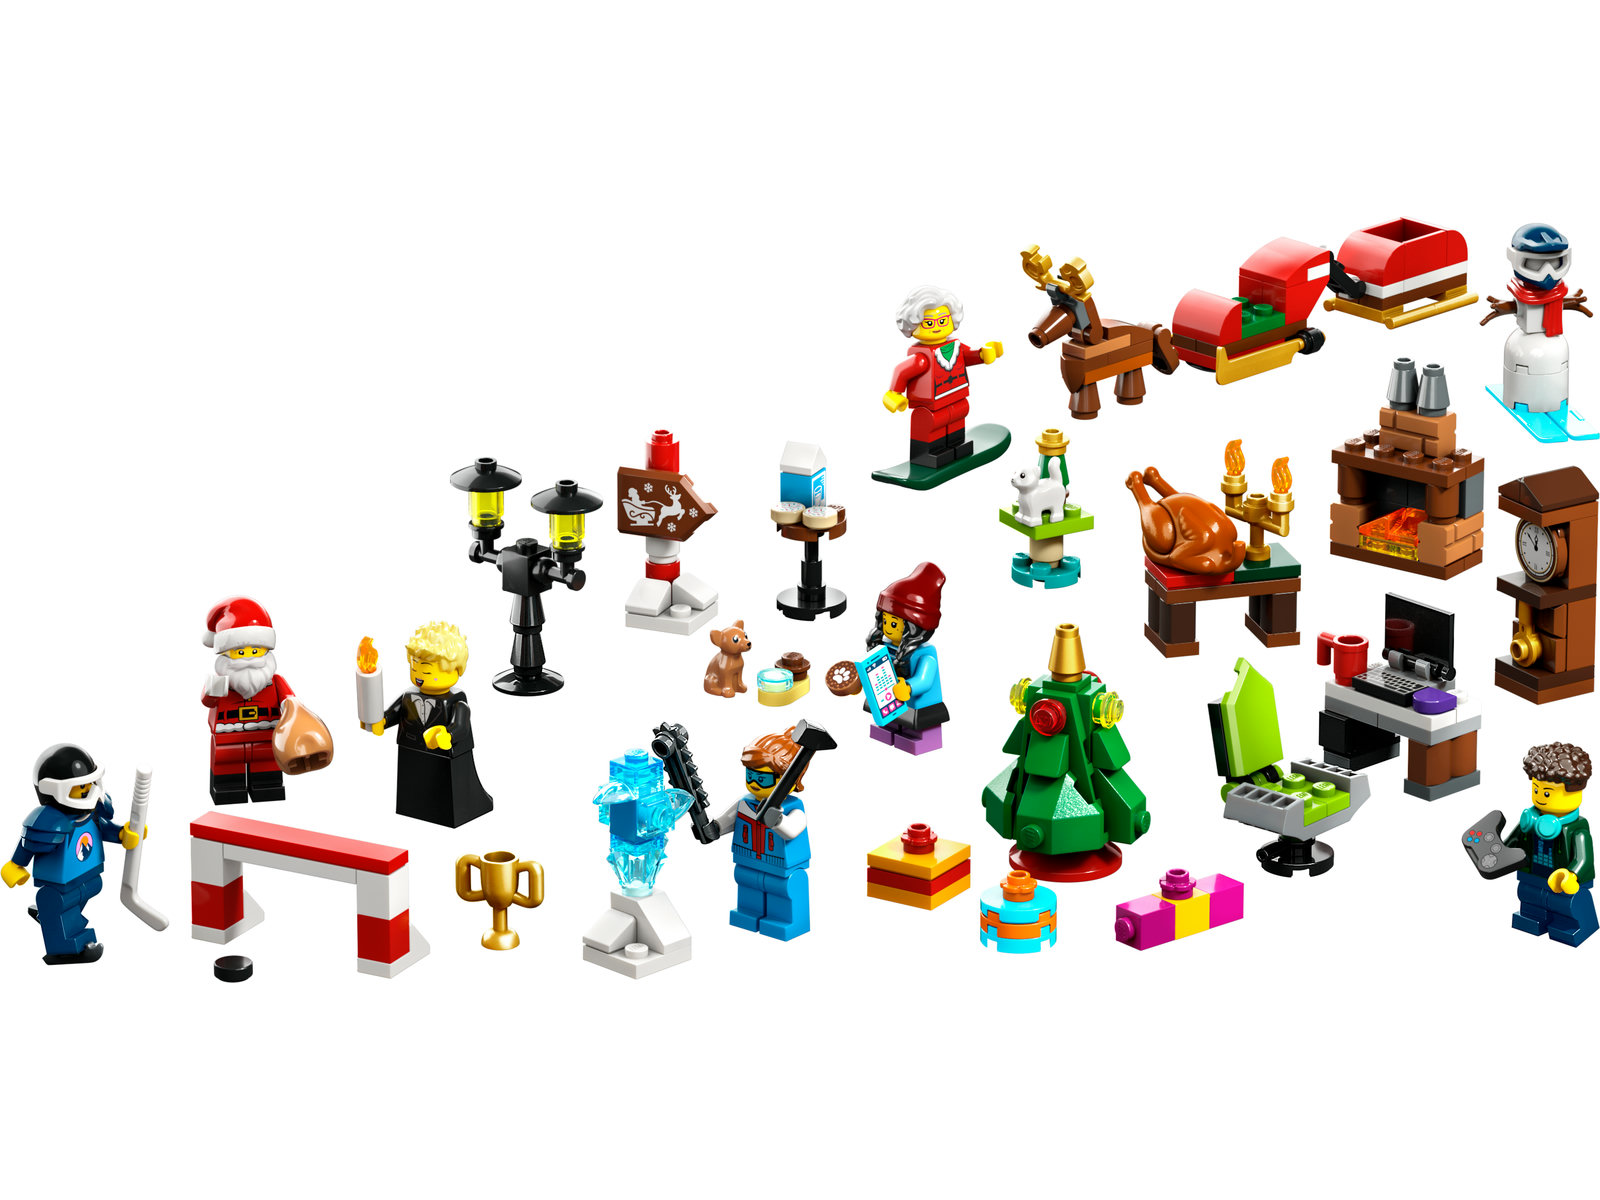 LEGO® City 60381 - Adventskalender 2023